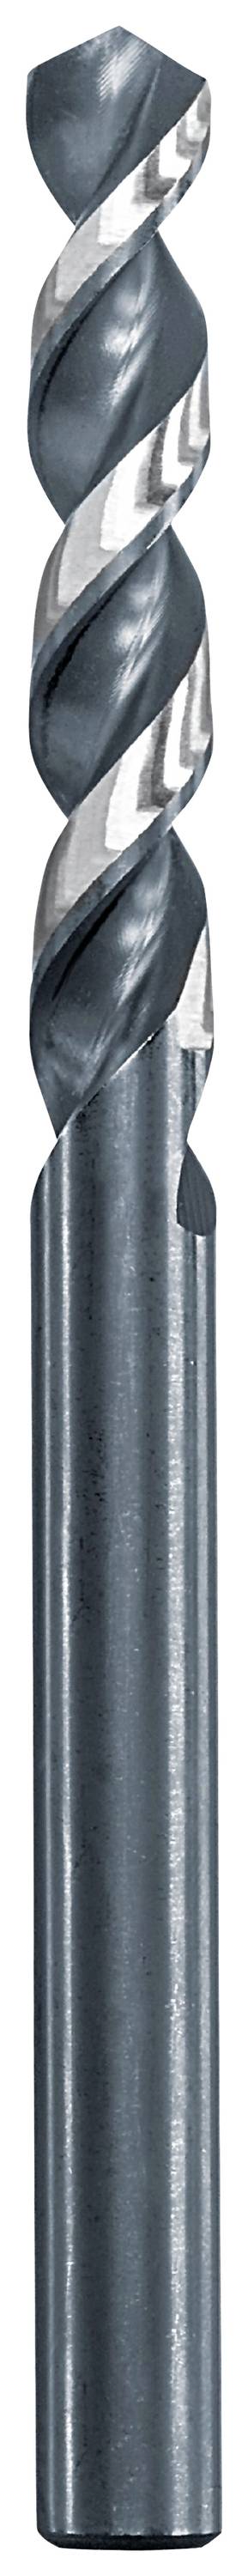 KWB 258695 Metall-Spiralbohrer 9.5 mm Gesamtlänge 125 mm 1 St.